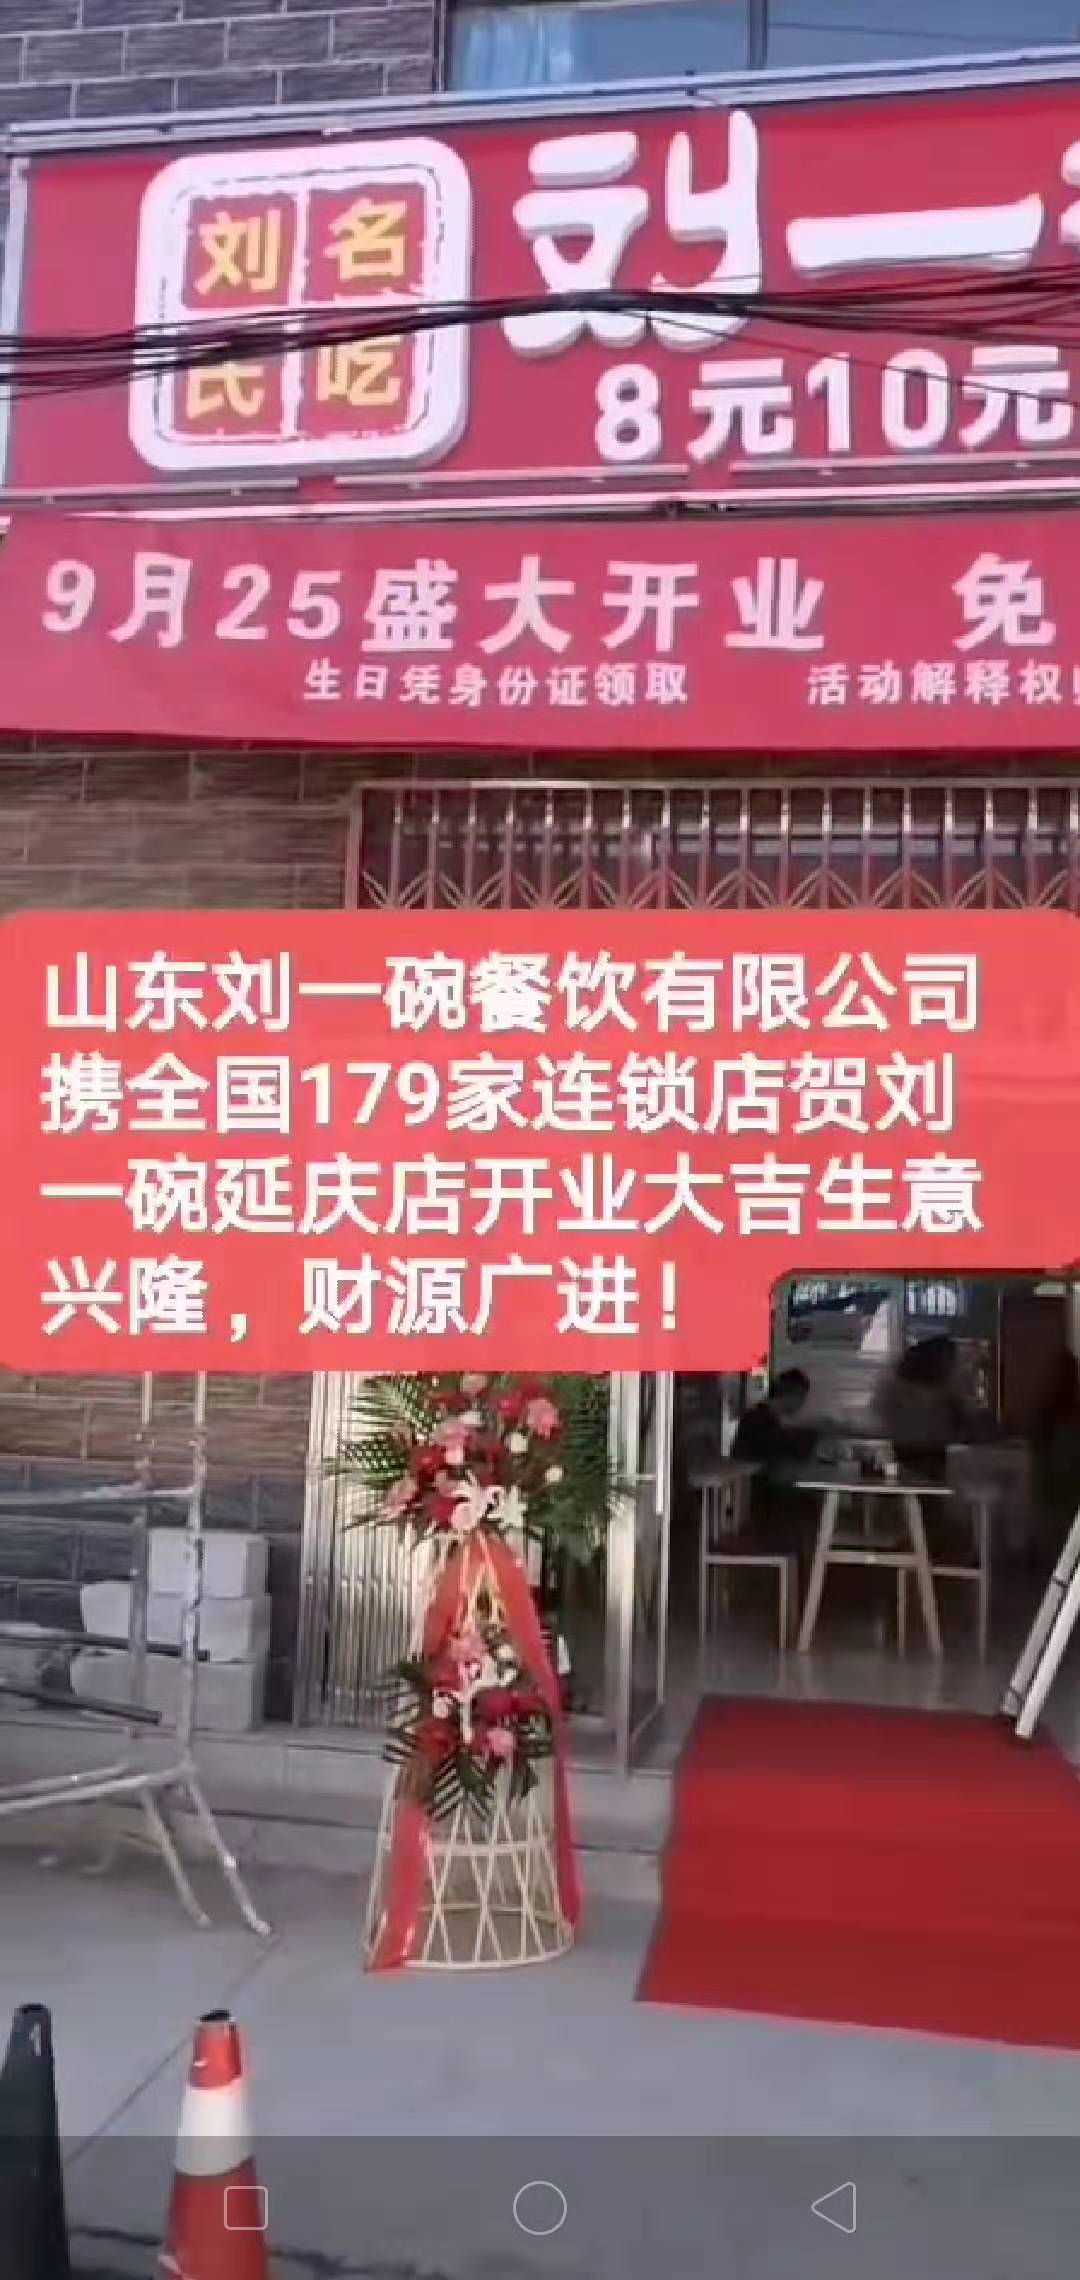 山东刘一碗北京延庆店于2019年9月25日盛大开业，祝开业大吉